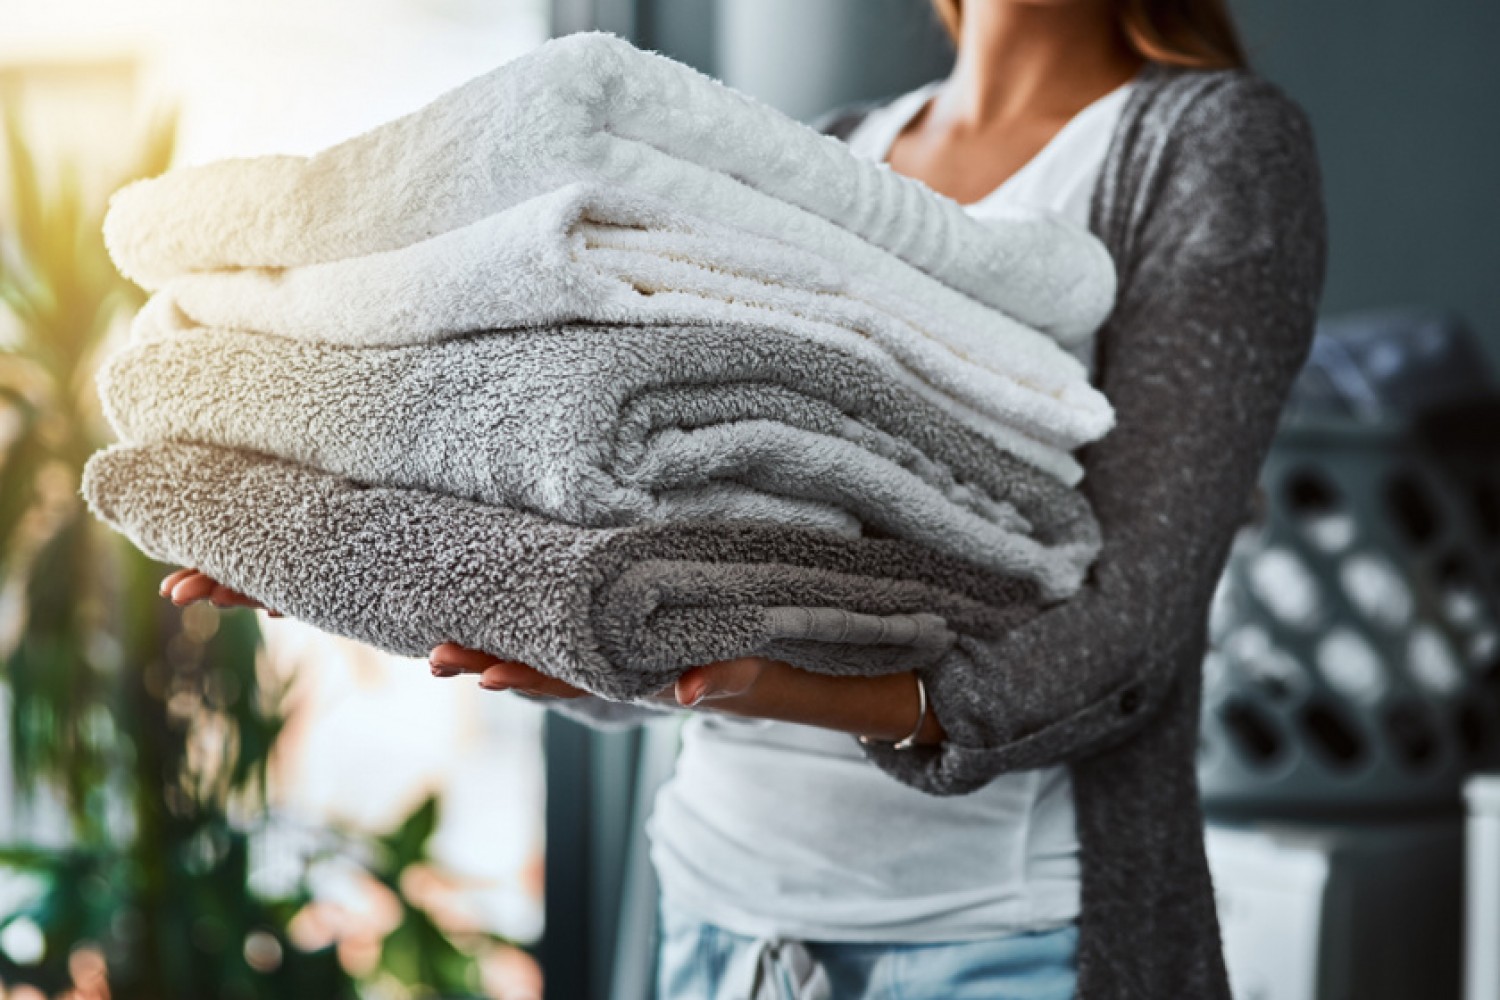 A szállodai takarító elárulta a törölköző mosás titkát